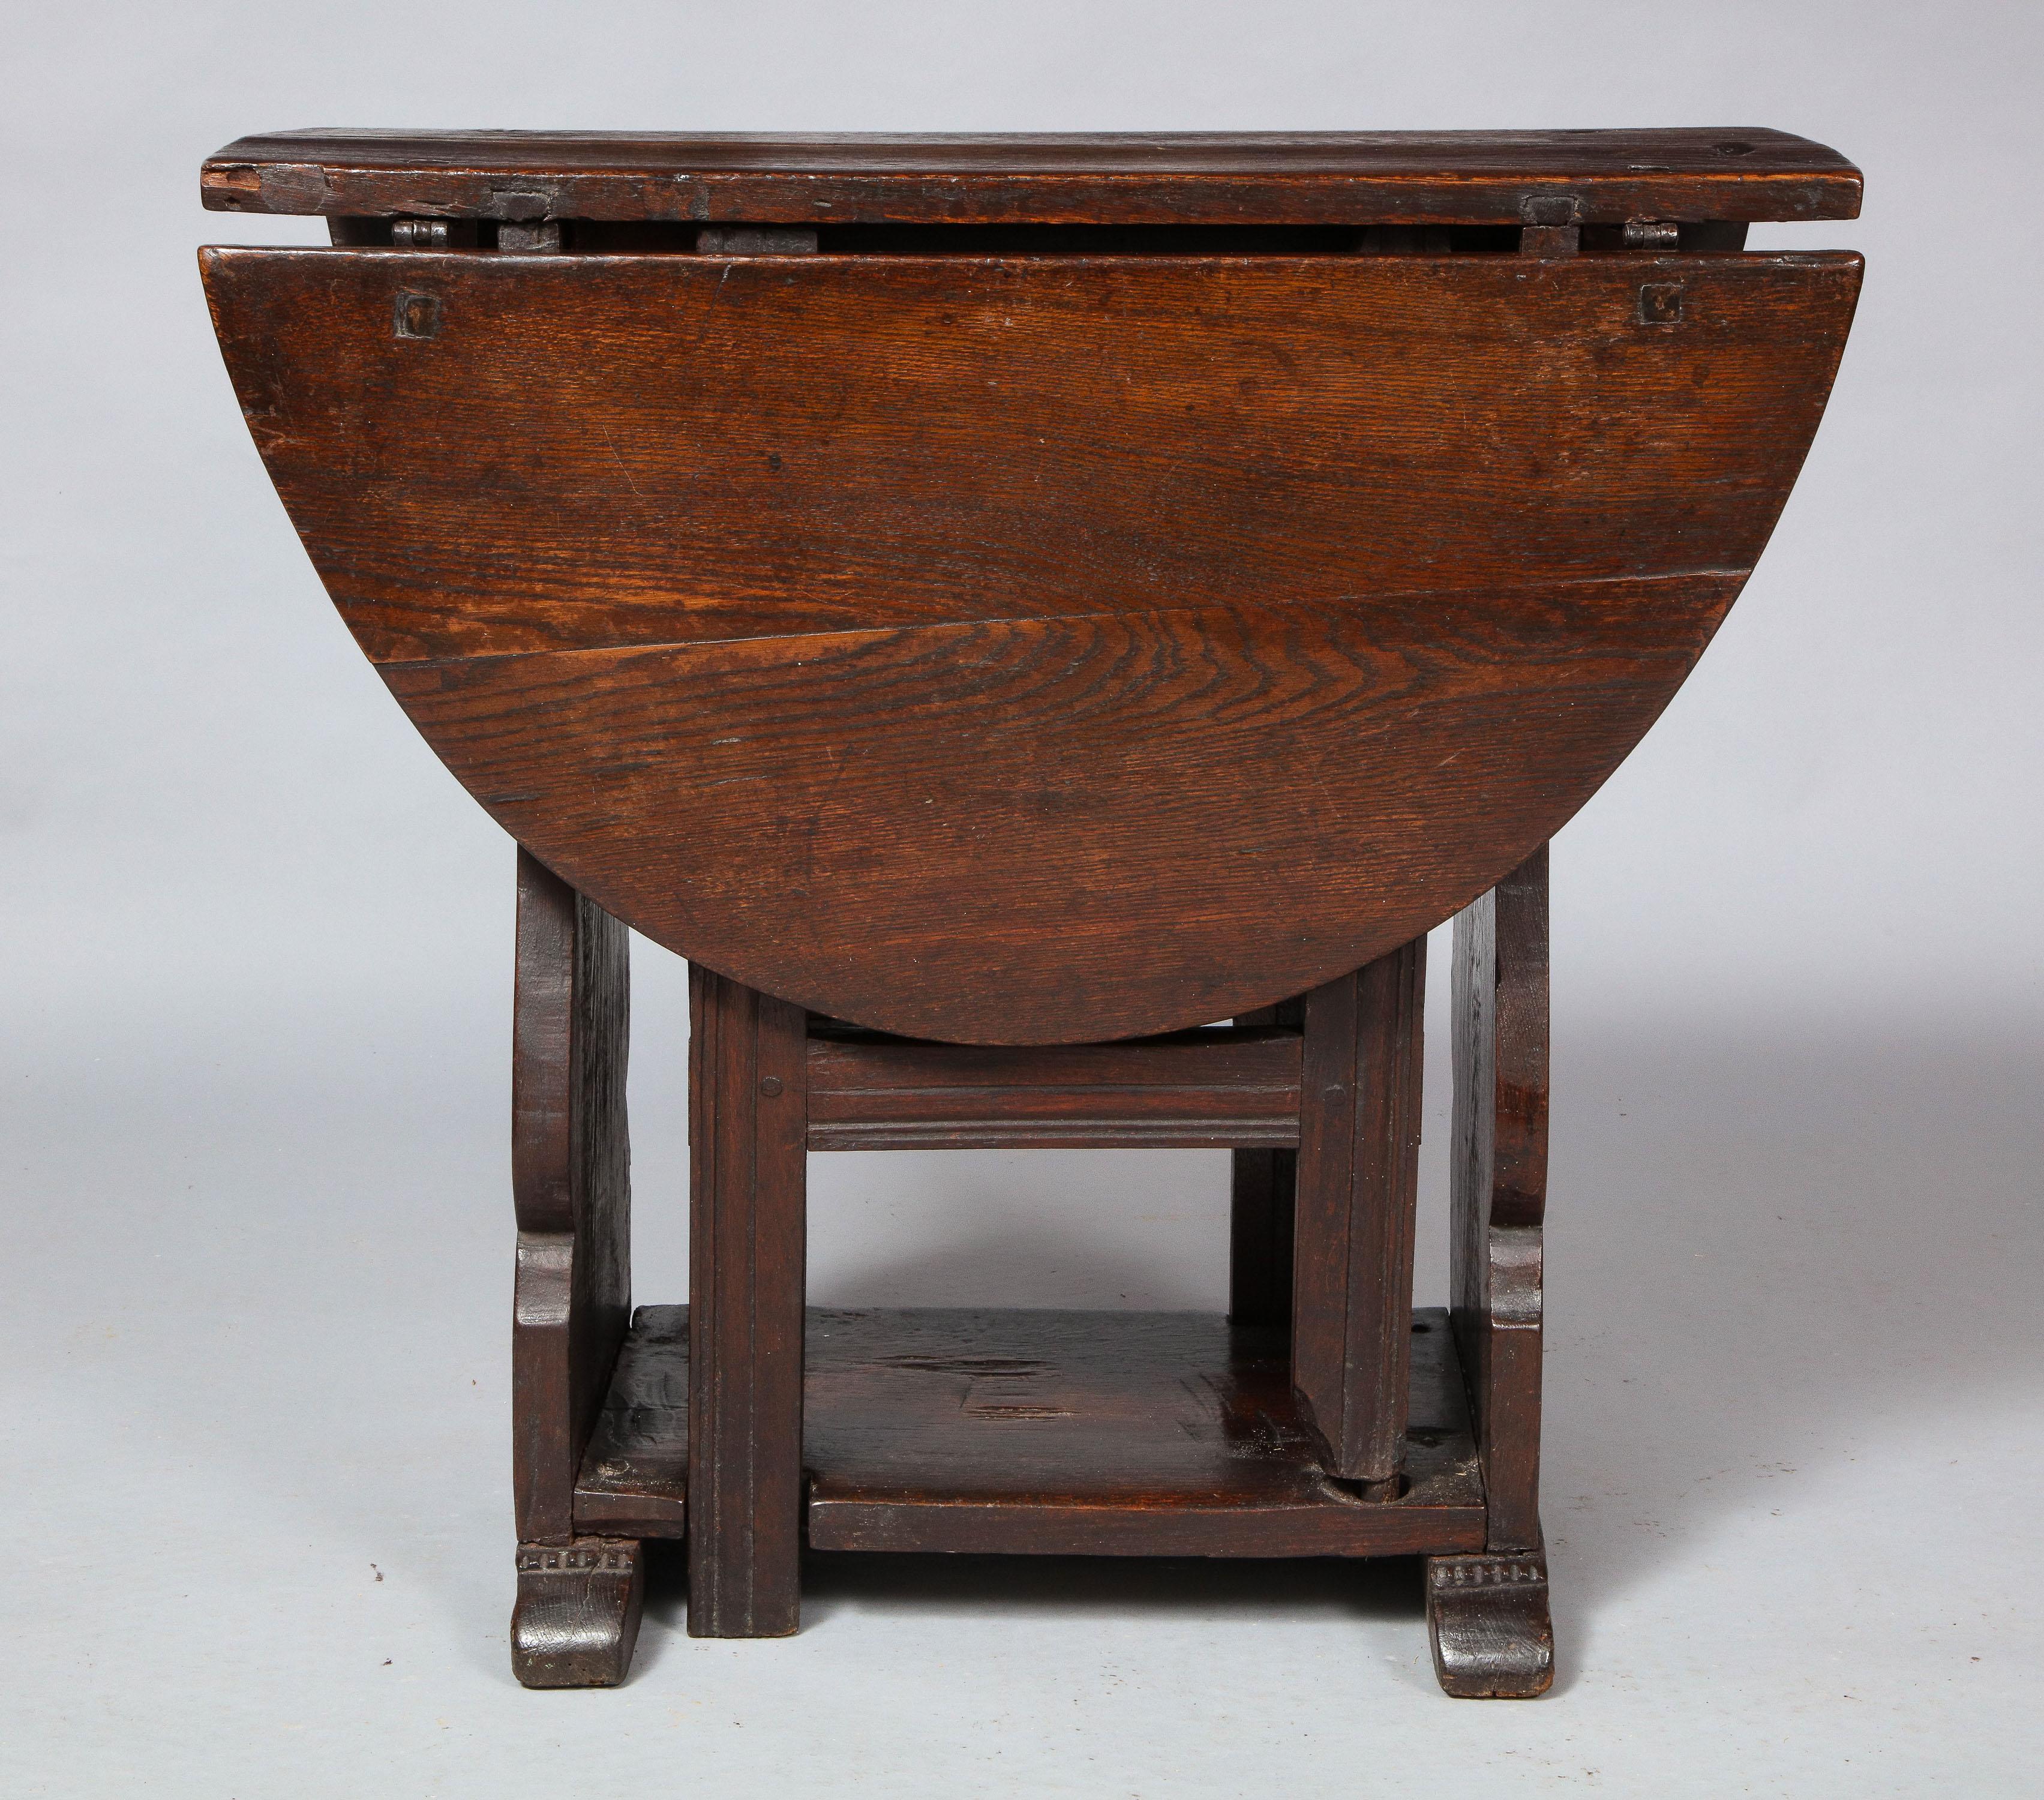 Gute späten 17. Jahrhundert Englisch oder Walisisch Eiche gateleg Tabelle, die ovale Oberseite über Balustrade Silhouette schlagen endet, eine mit Schublade, die Schaukel Beine der einfachen verbretterten Konstruktion, stehen auf geformten